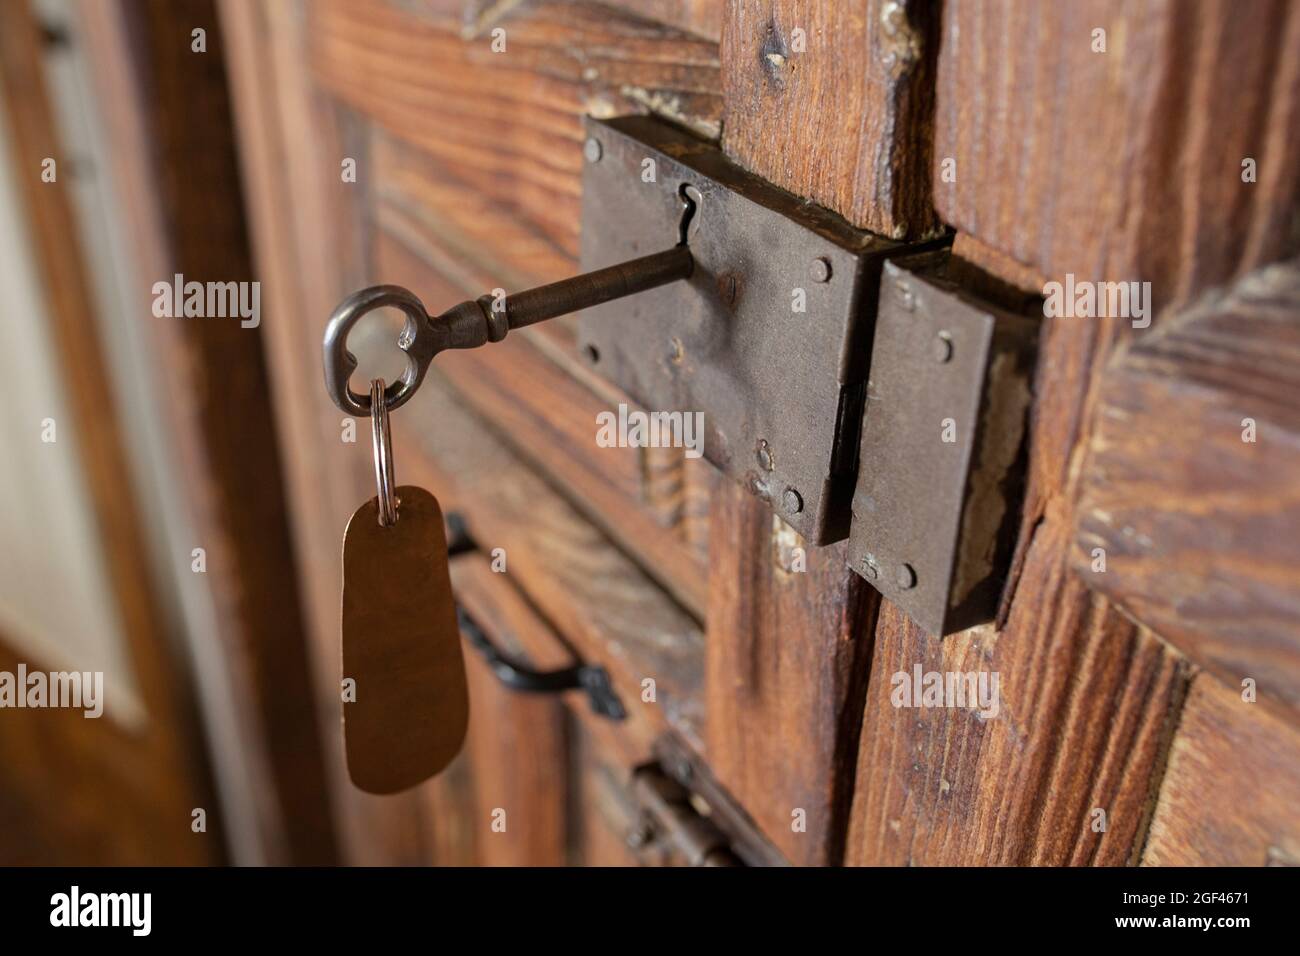 Serratura a chiave per camera rurale con etichetta appesa. Concetto di turismo rurale. Foto Stock